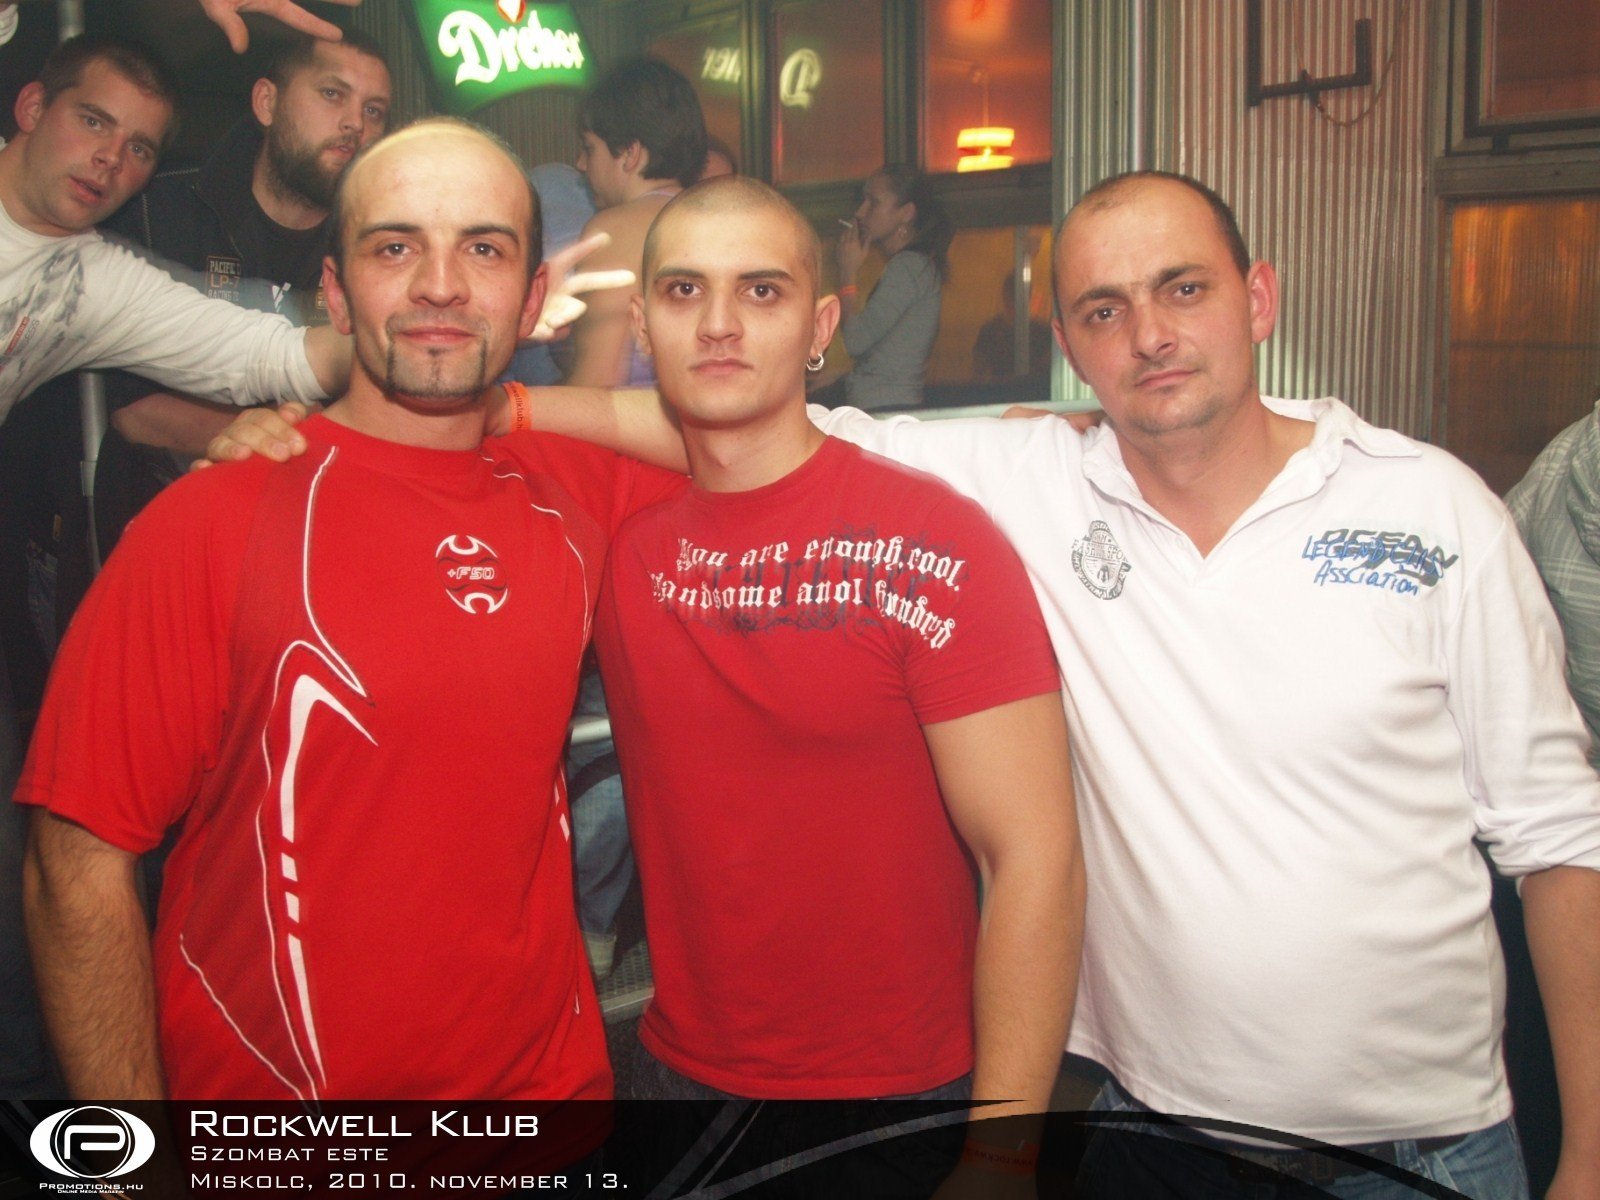 Miskolc, RockWell Klub - 2010. november 13. szombat